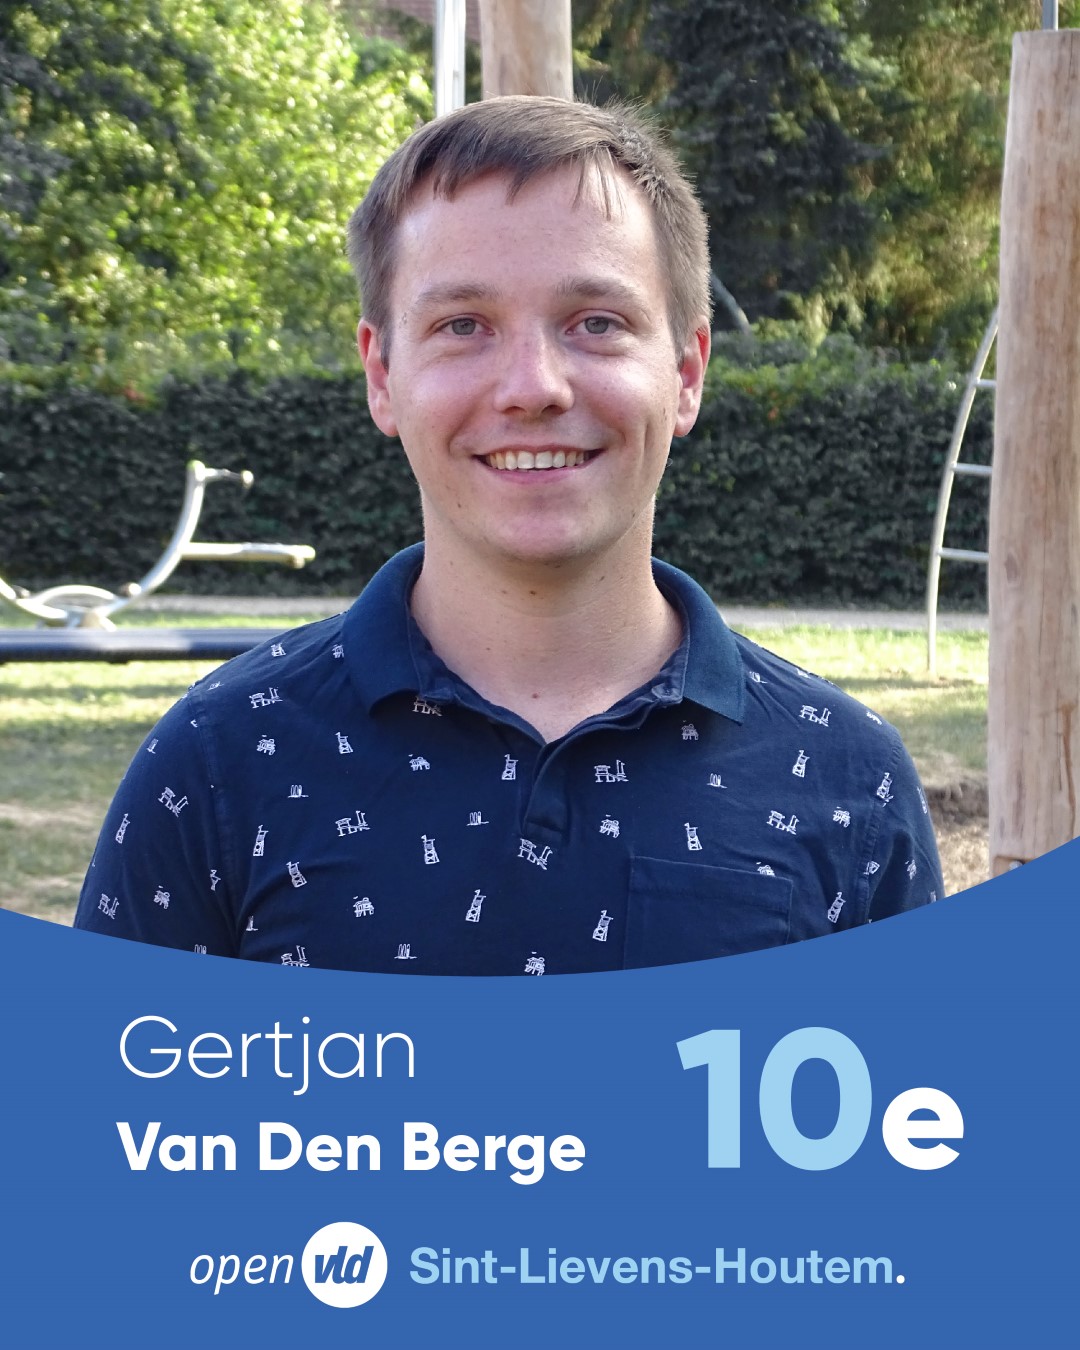 Gertjan Van Den Berge